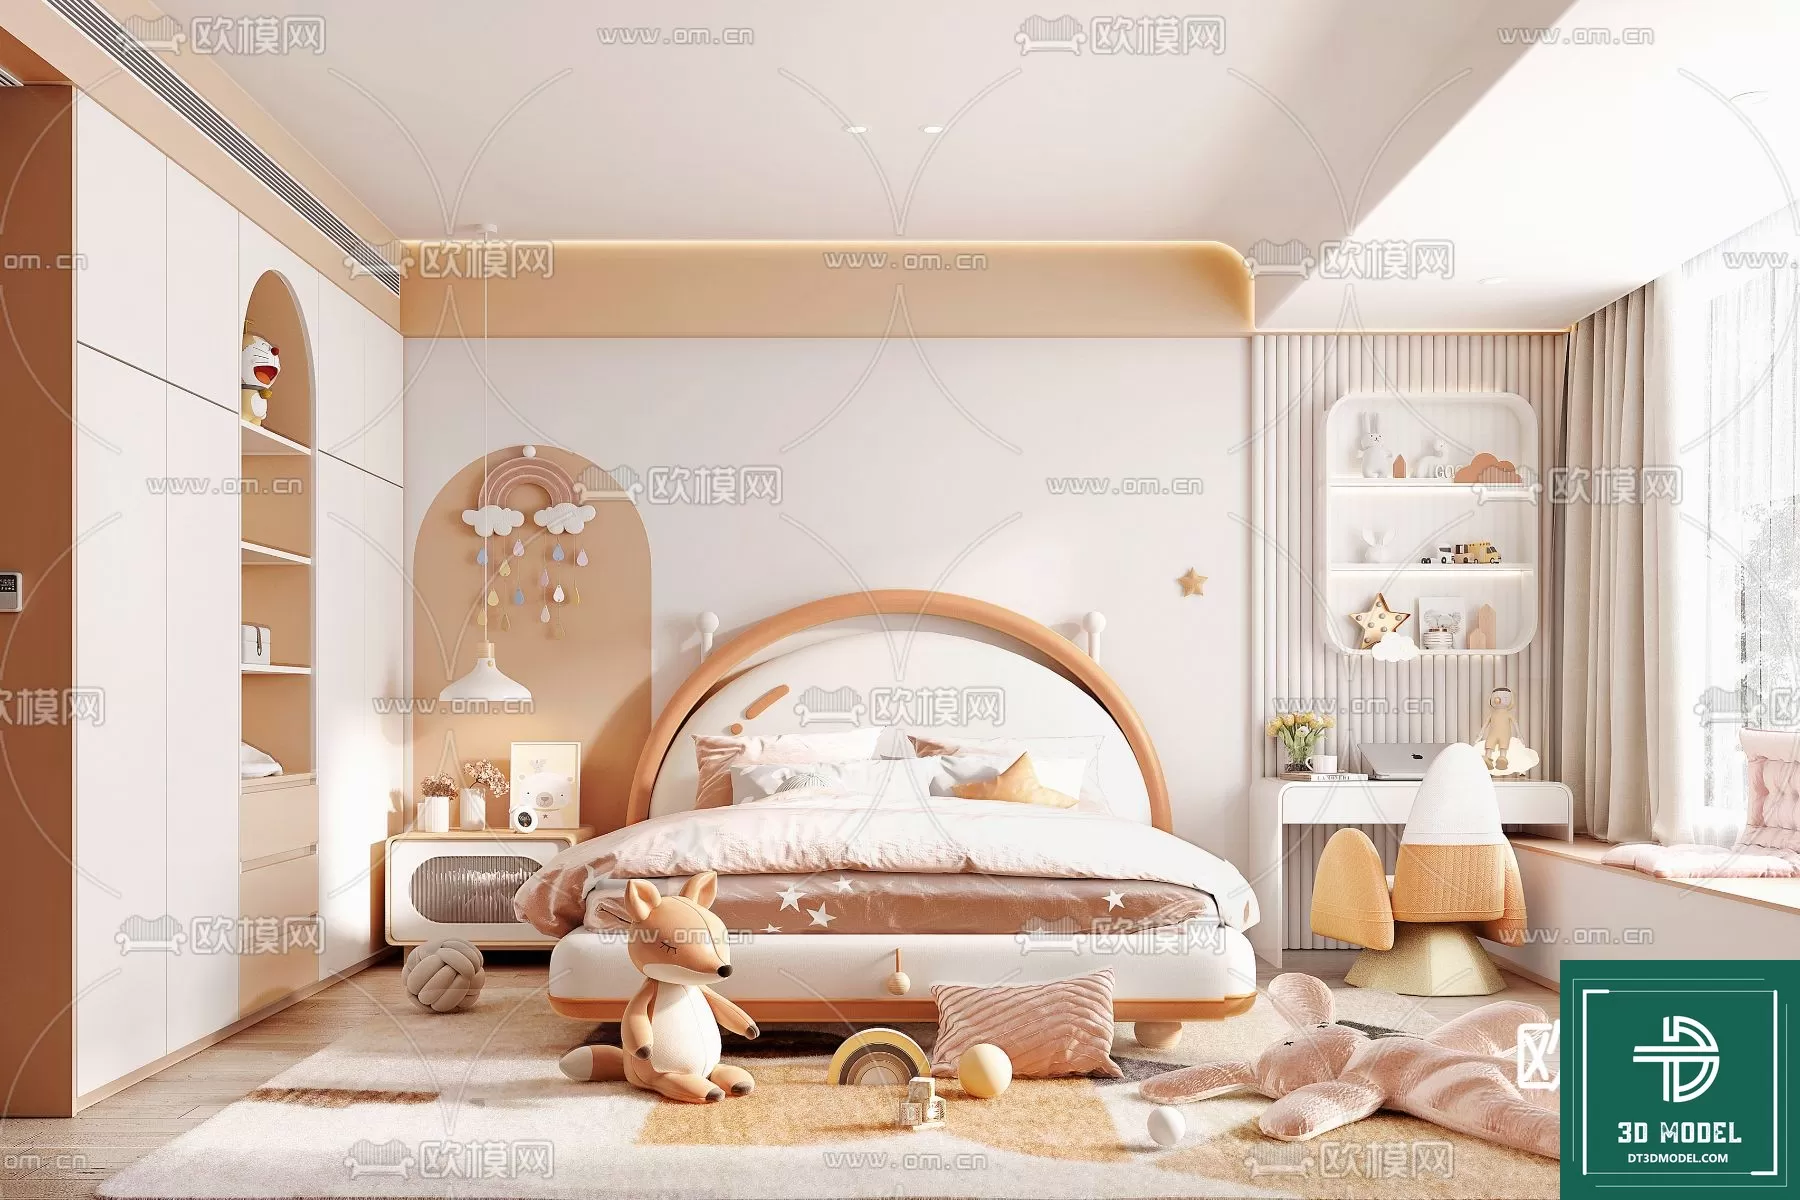 BED FOR KID – 3D MODELS – 612 – PRO